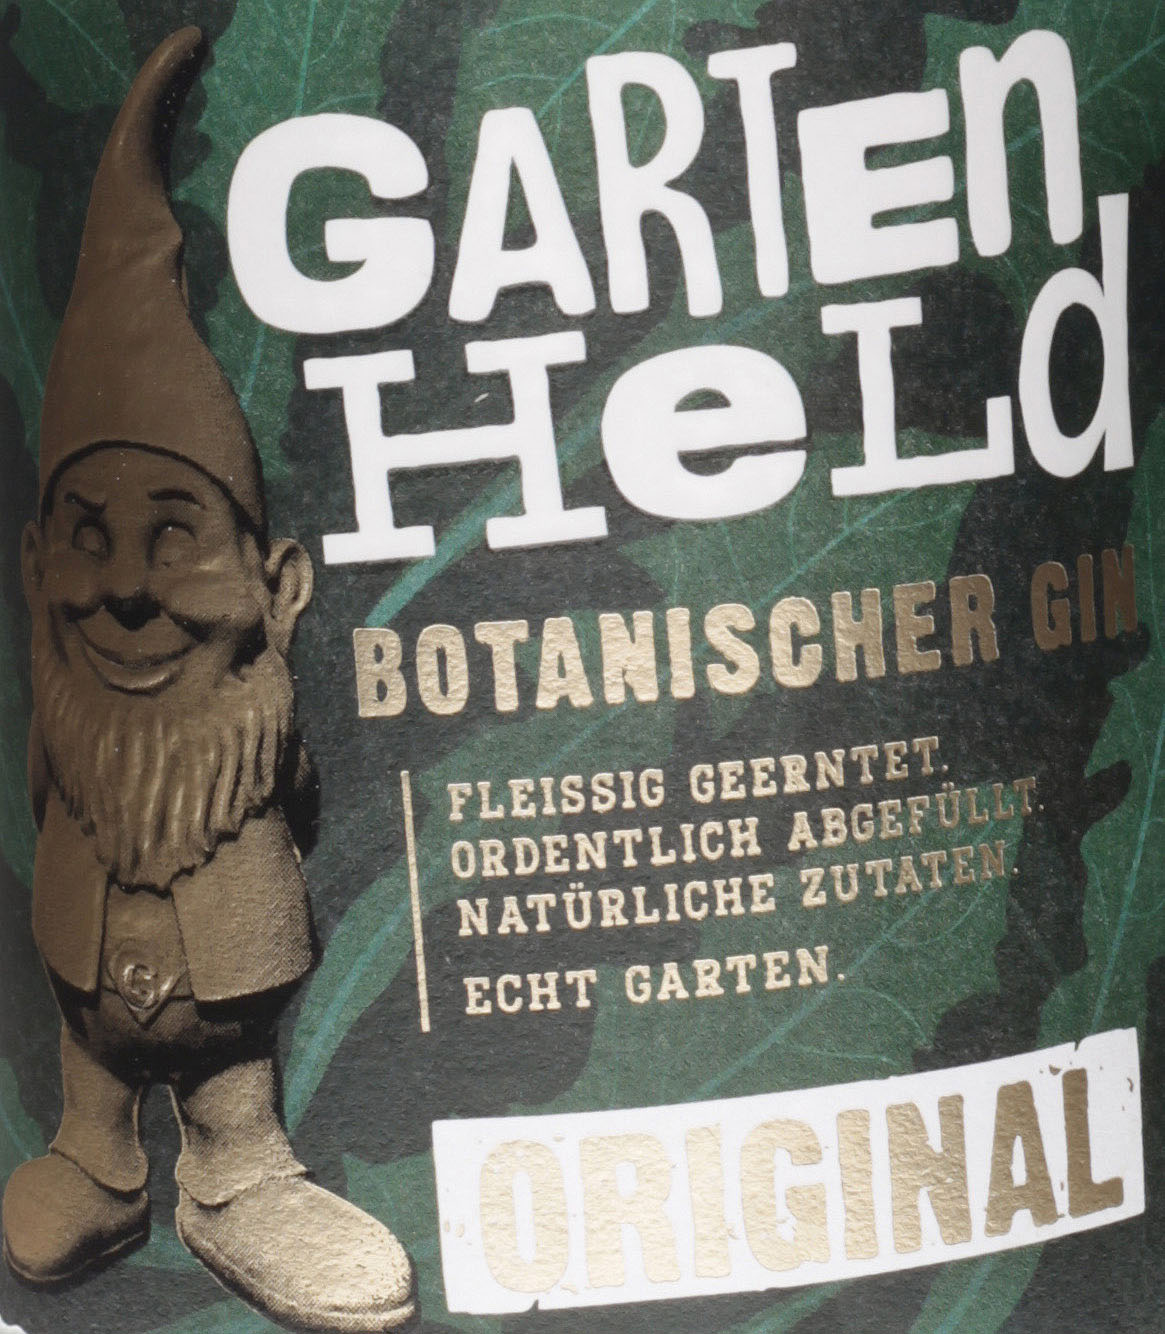 Gartenheld Botanischer Gin Original - Bei uns im Shop k